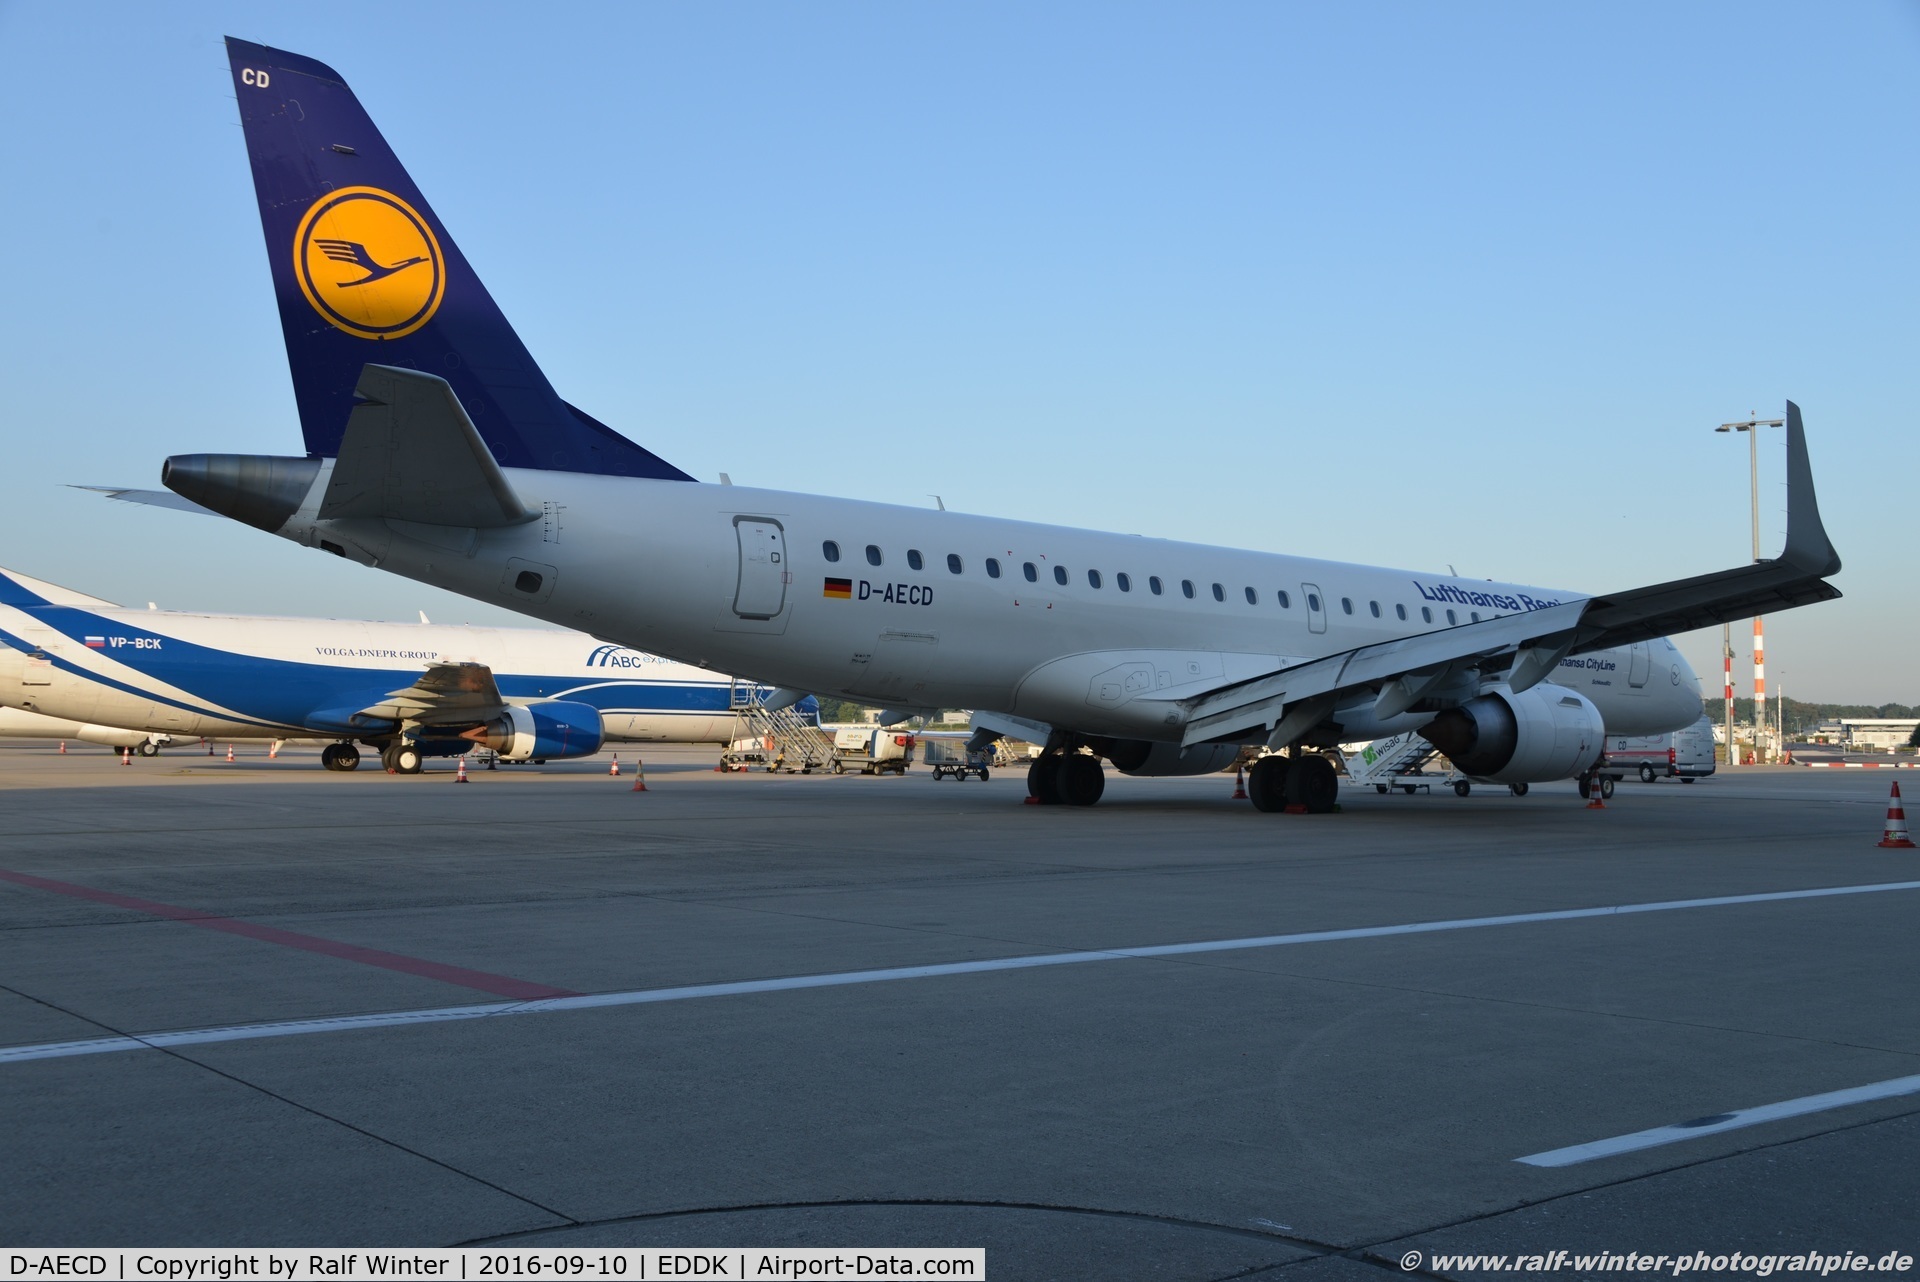 D-AECD, 2010 Embraer 190LR (ERJ-190-100LR) C/N 19000337, Embraer ERJ-190LR - CL CLH Lufthansa Cityline 'Schkeudiz- 19000337 - D-AECD - 10.09.2016 - CGN